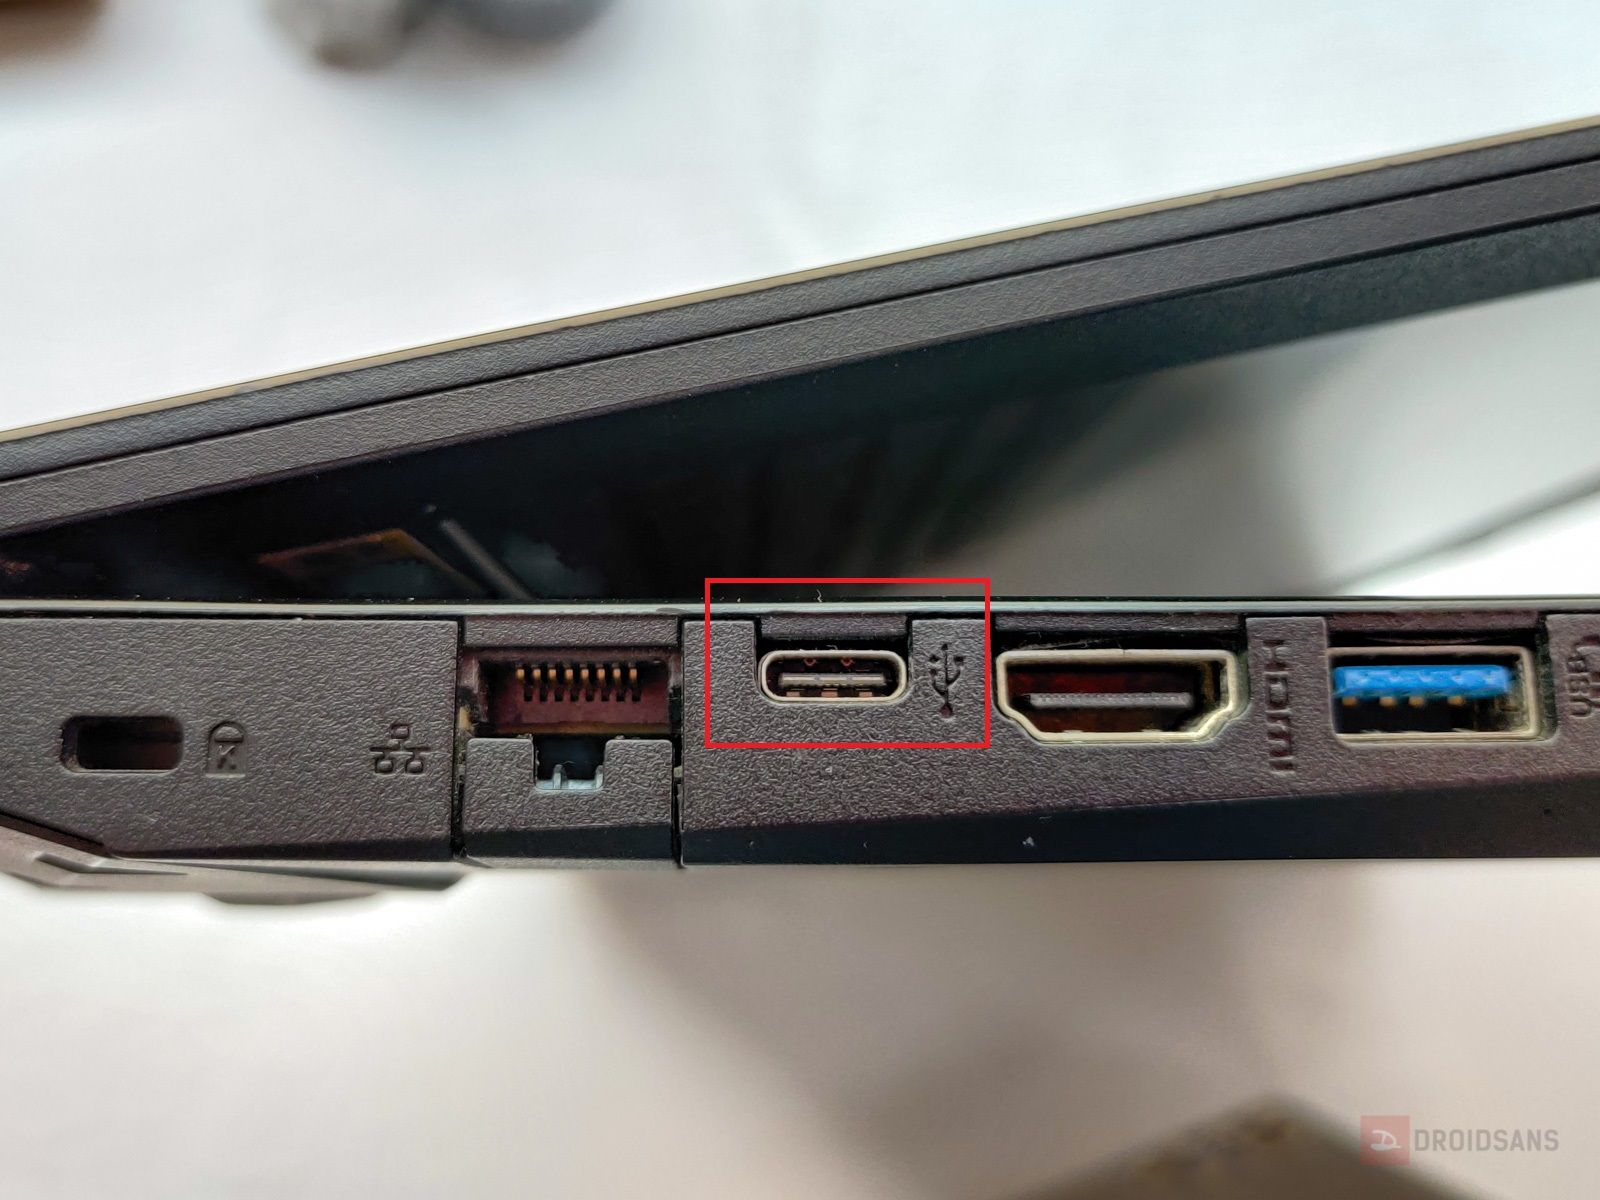 USB Type C บนโน้ตบุ๊คมีทั้งหมดกี่แบบ ใช้งานแตกต่างกันอย่างไร และแบบไหนดีที่สุด